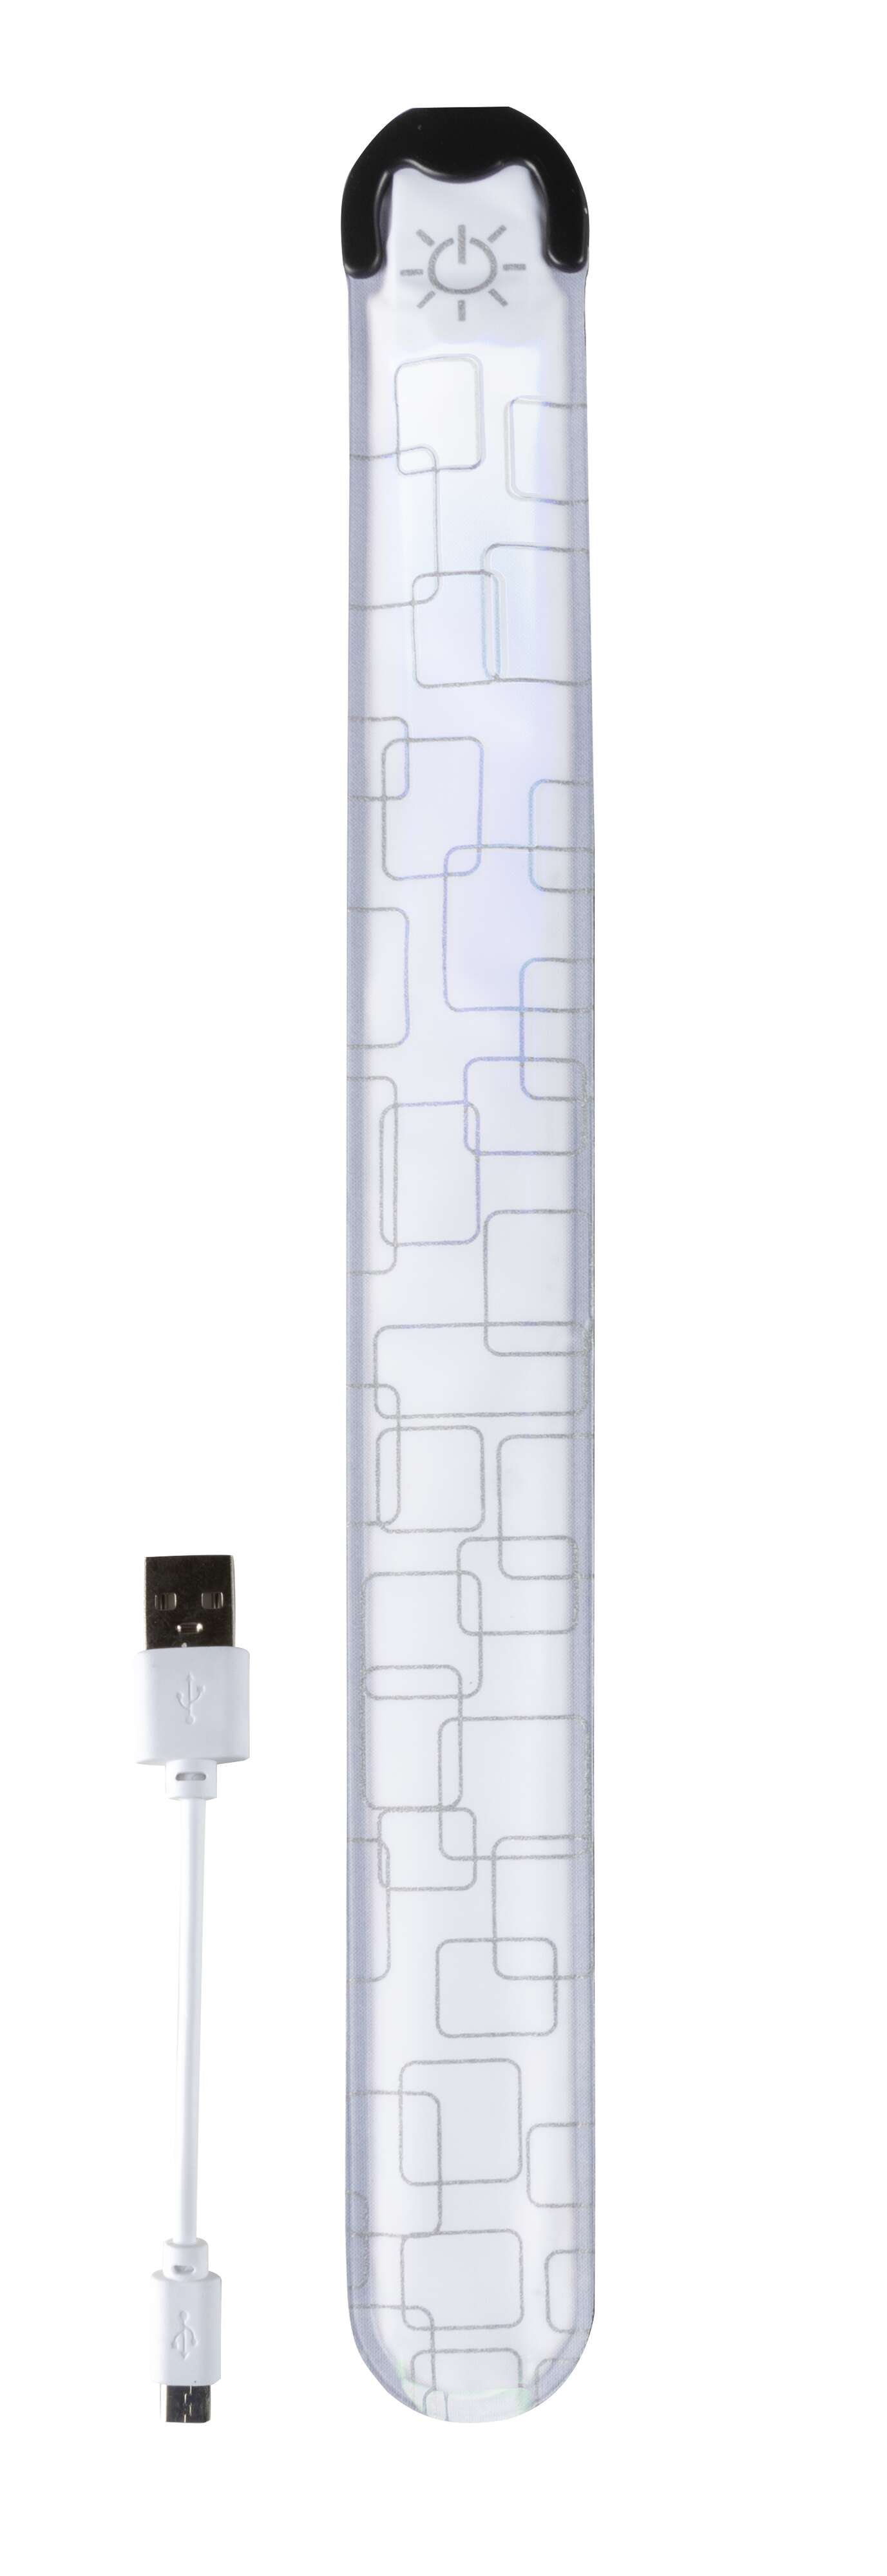 LED Klackband, leuchtendes Slap Wrap mit USB-Auflademöglichkeit 36x3,5 cm silber